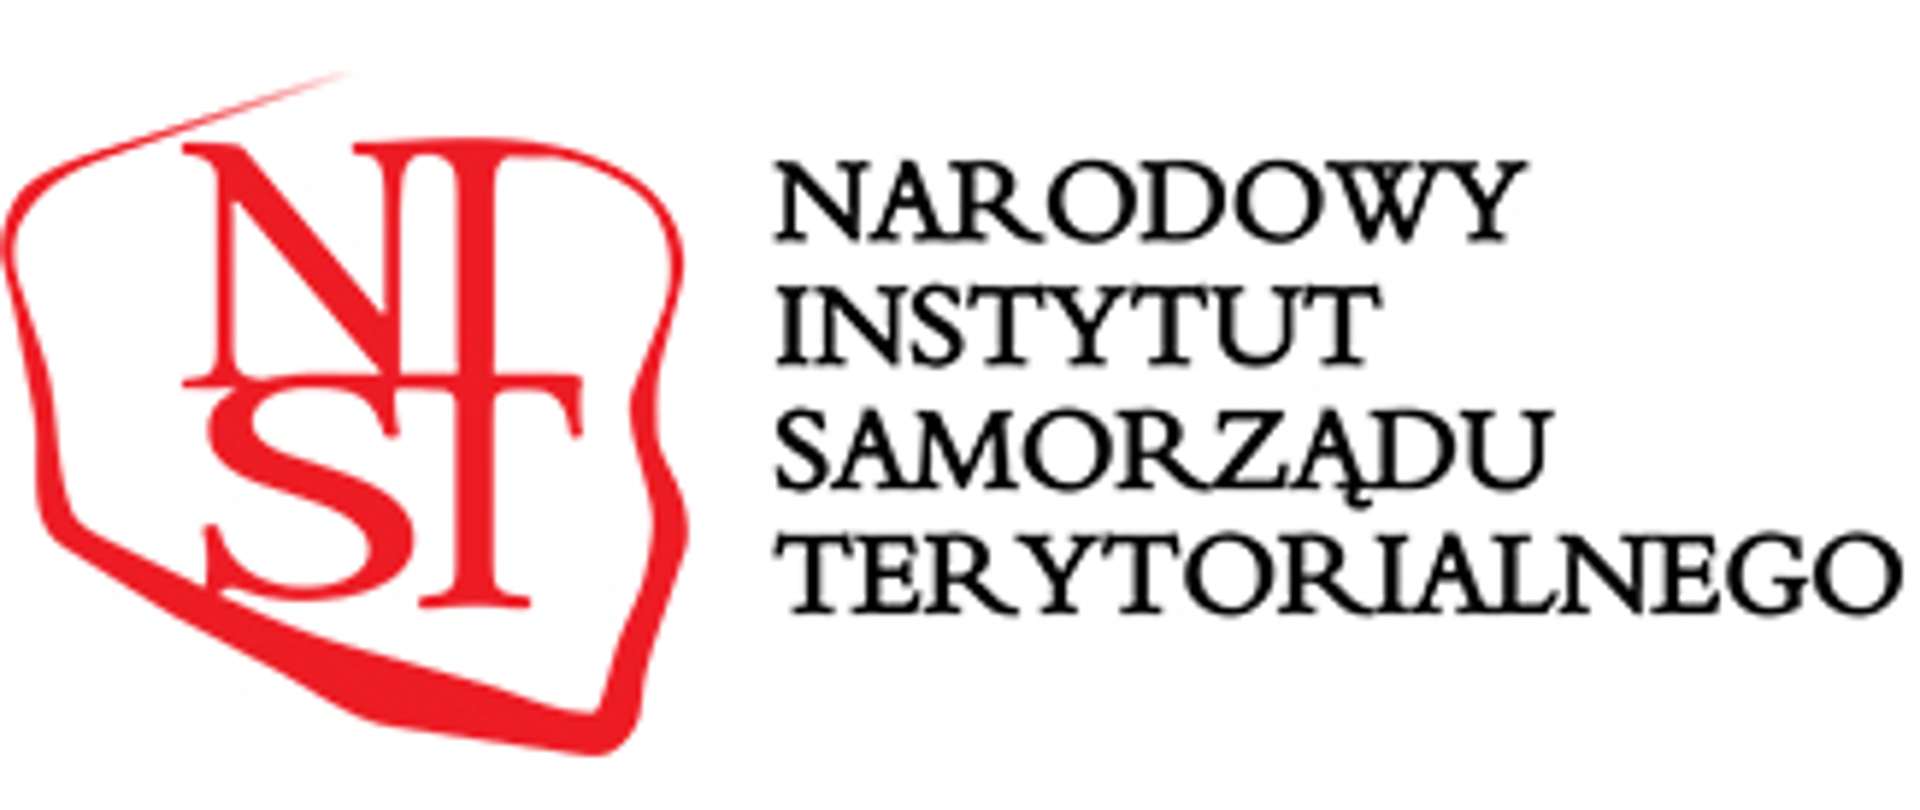 Napis "Narodowy Instytut Samorządu Terytorialnego", a po jego lewej stornie czerwone granice Polski, w których w środku znajdują się litery N, I, S, T